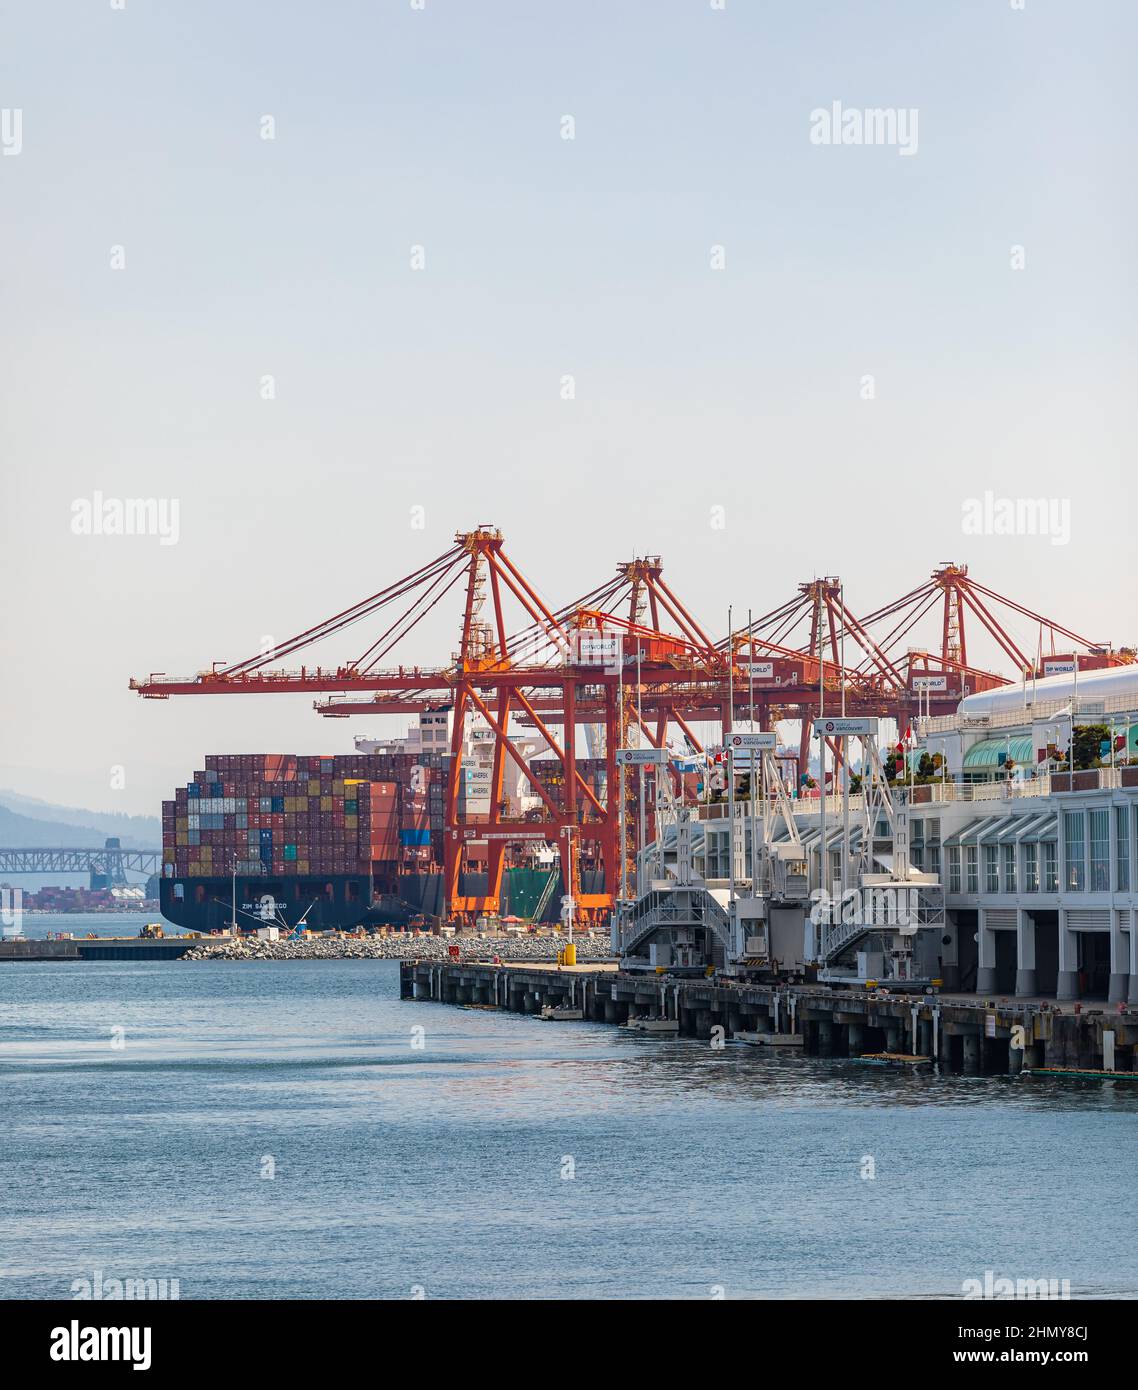 Containerhafenterminal in Vancouver BC, Kanada - einer der drei größten Häfen an der Westküste Nordamerikas Stockfoto